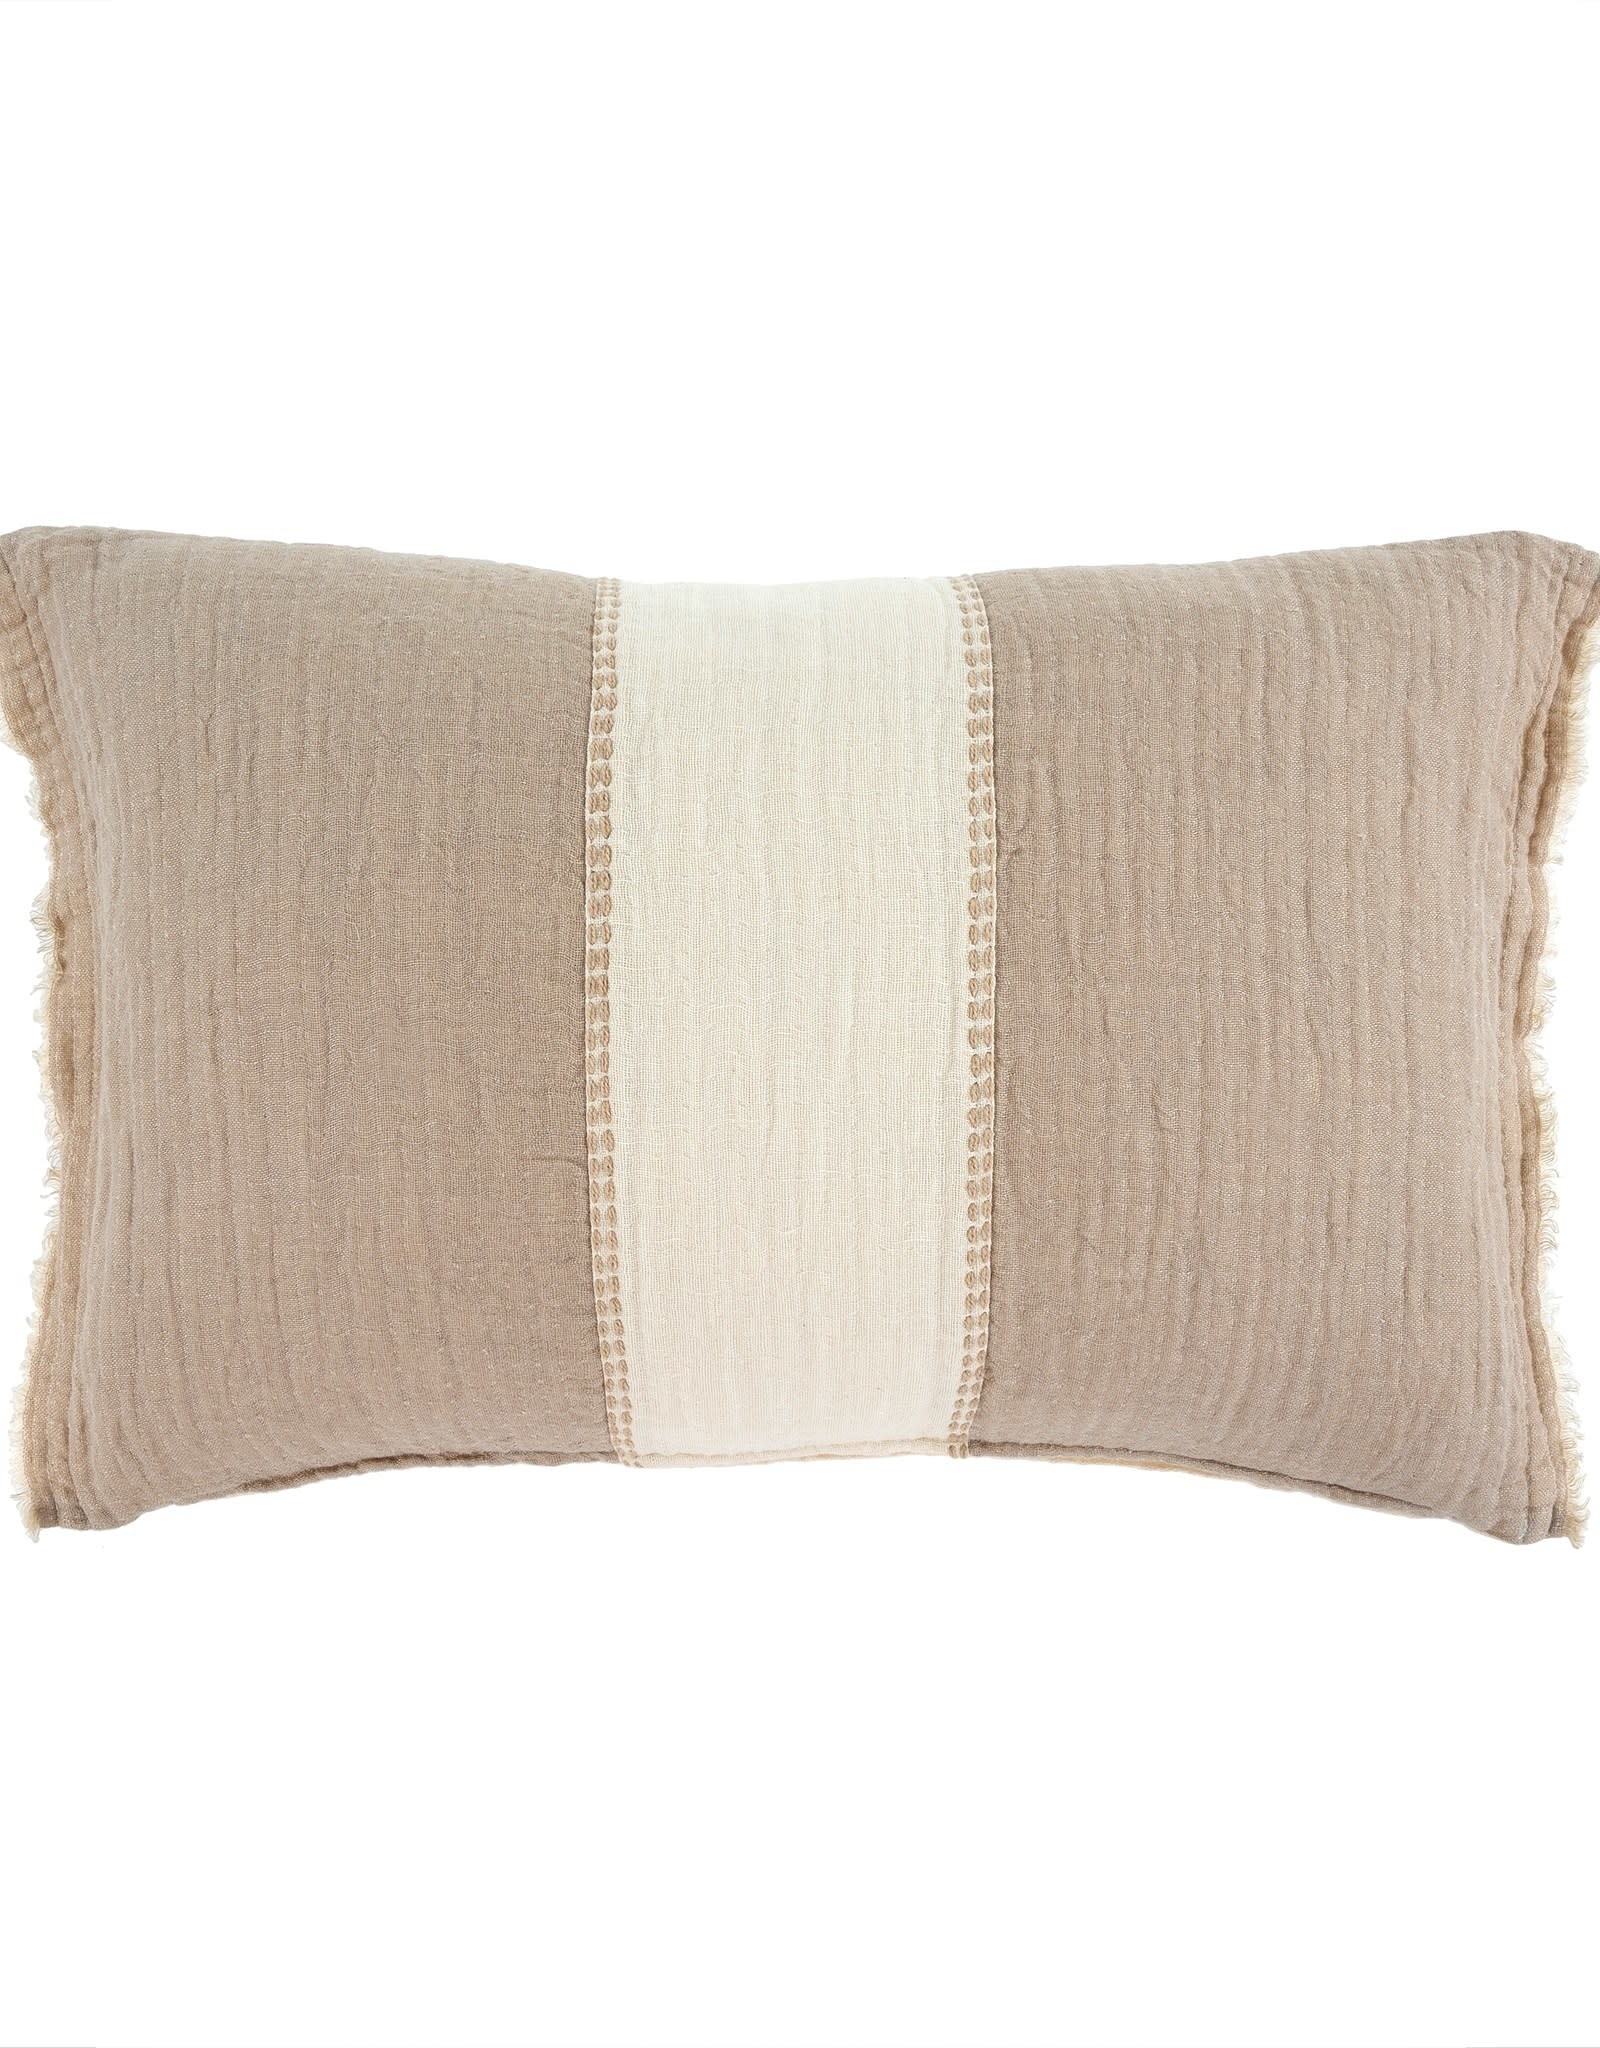 Kantha Patch Pillow Beige - 16x24